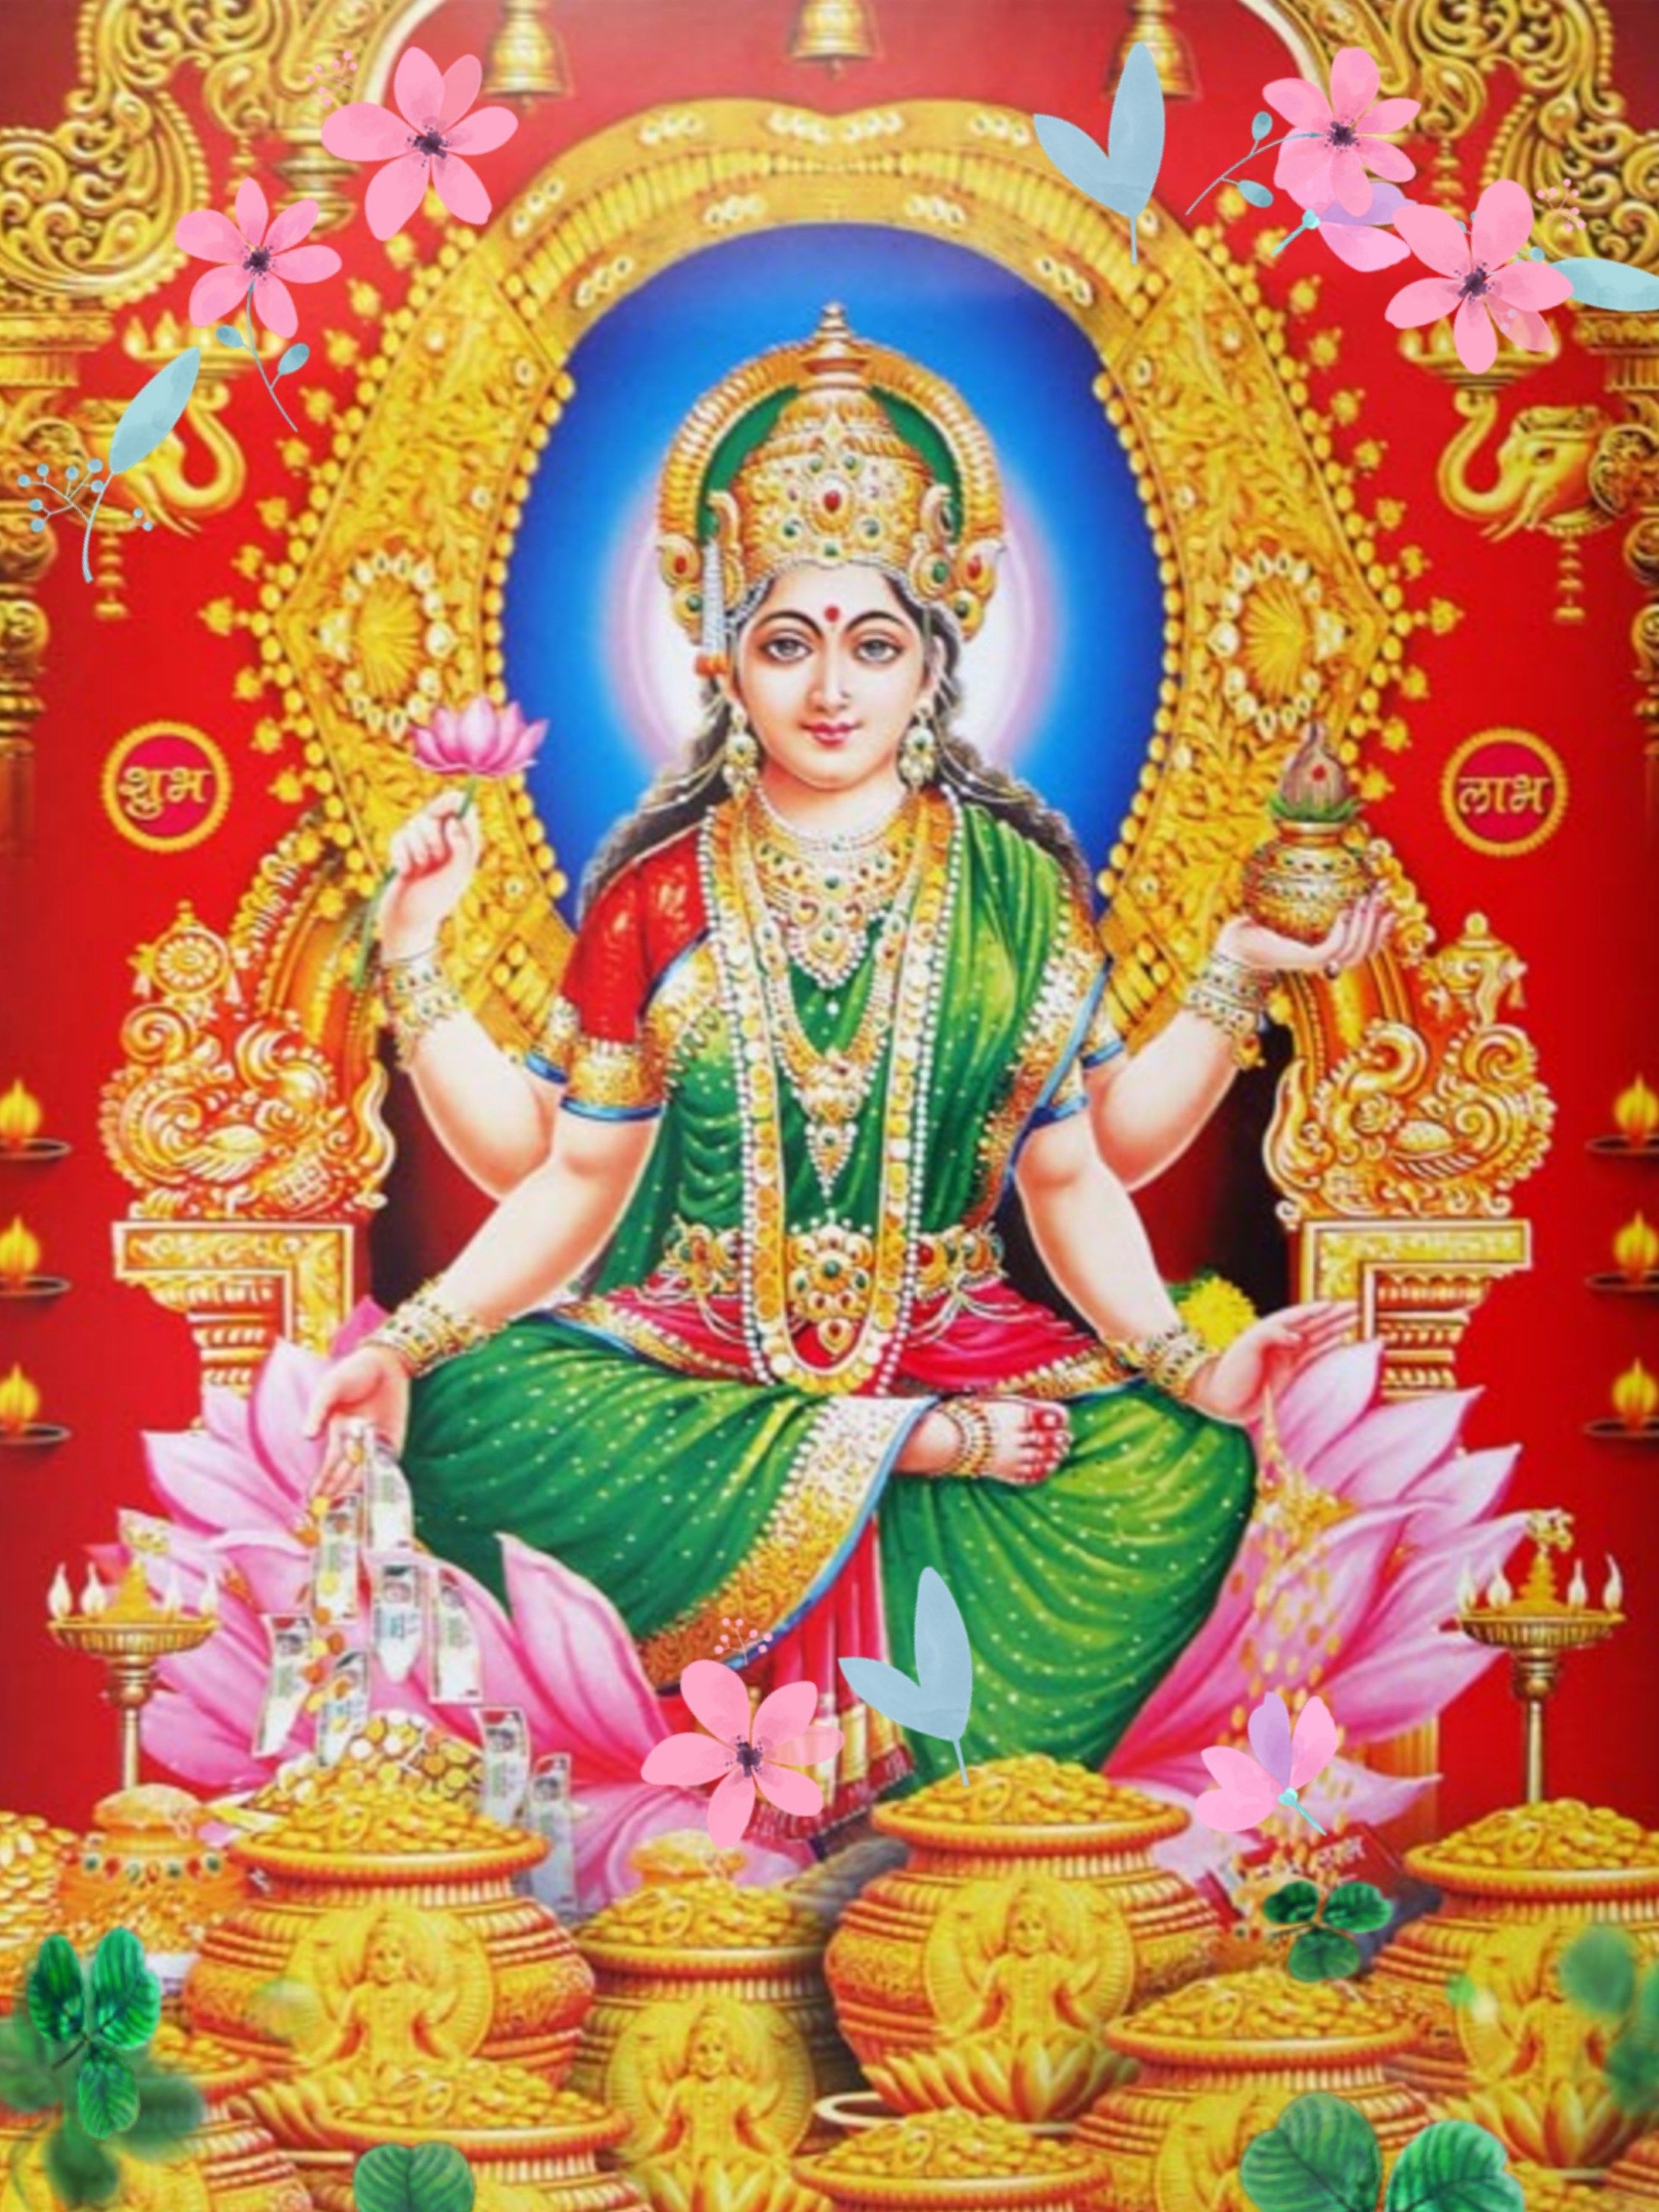 Goddess Lakshmi In Green Saree - 2172x2896 Wallpaper 